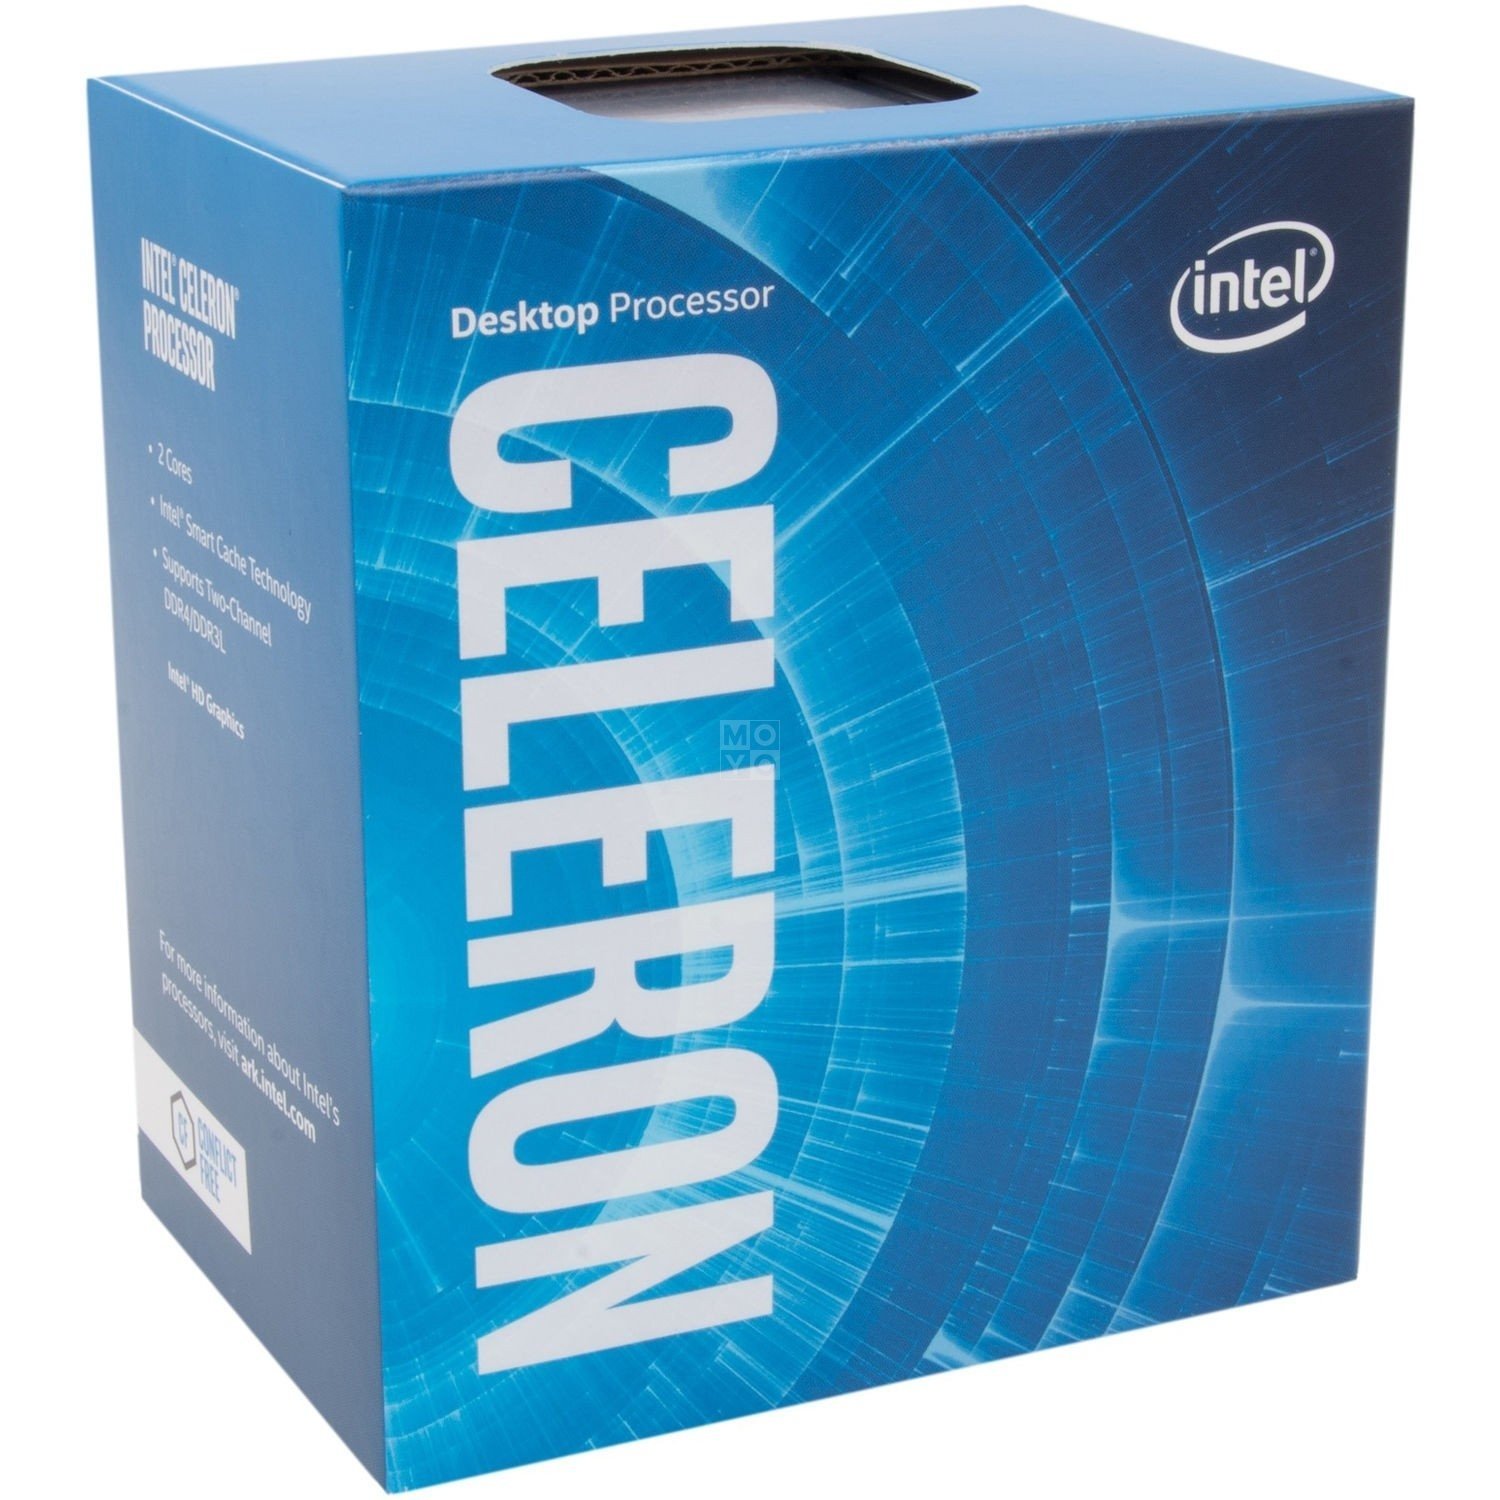  Процесор Intel Celeron G3930 2.9GHz/8GT/s/2MB (BX80677G3930) s1151 BOX фото